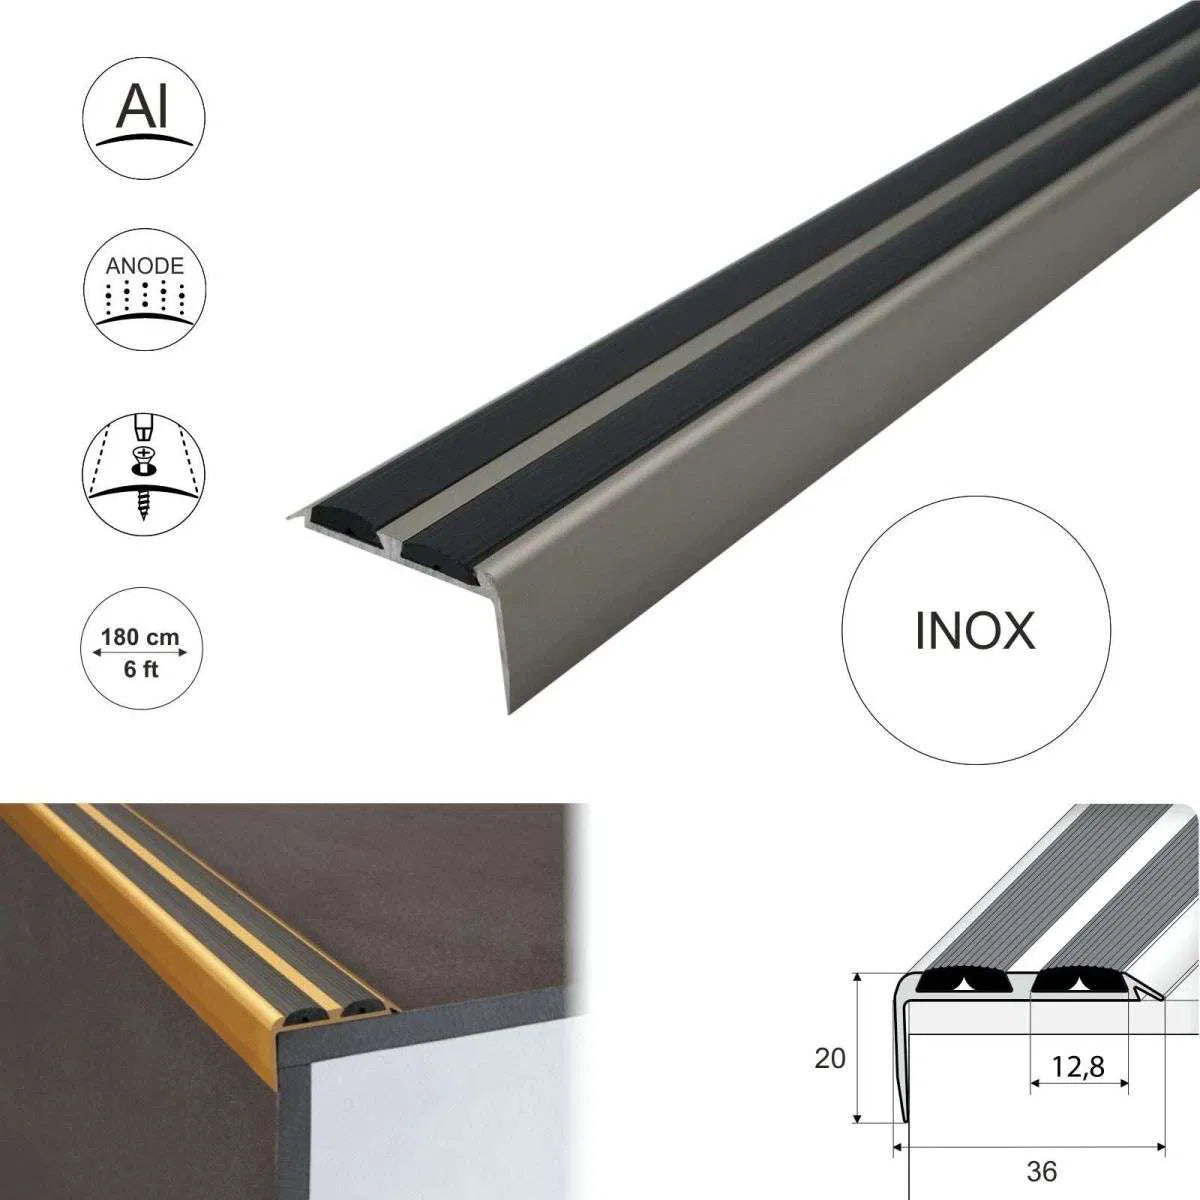 Aluminum Non Slip Rubber Stair Nosing Edge Trim With Insert